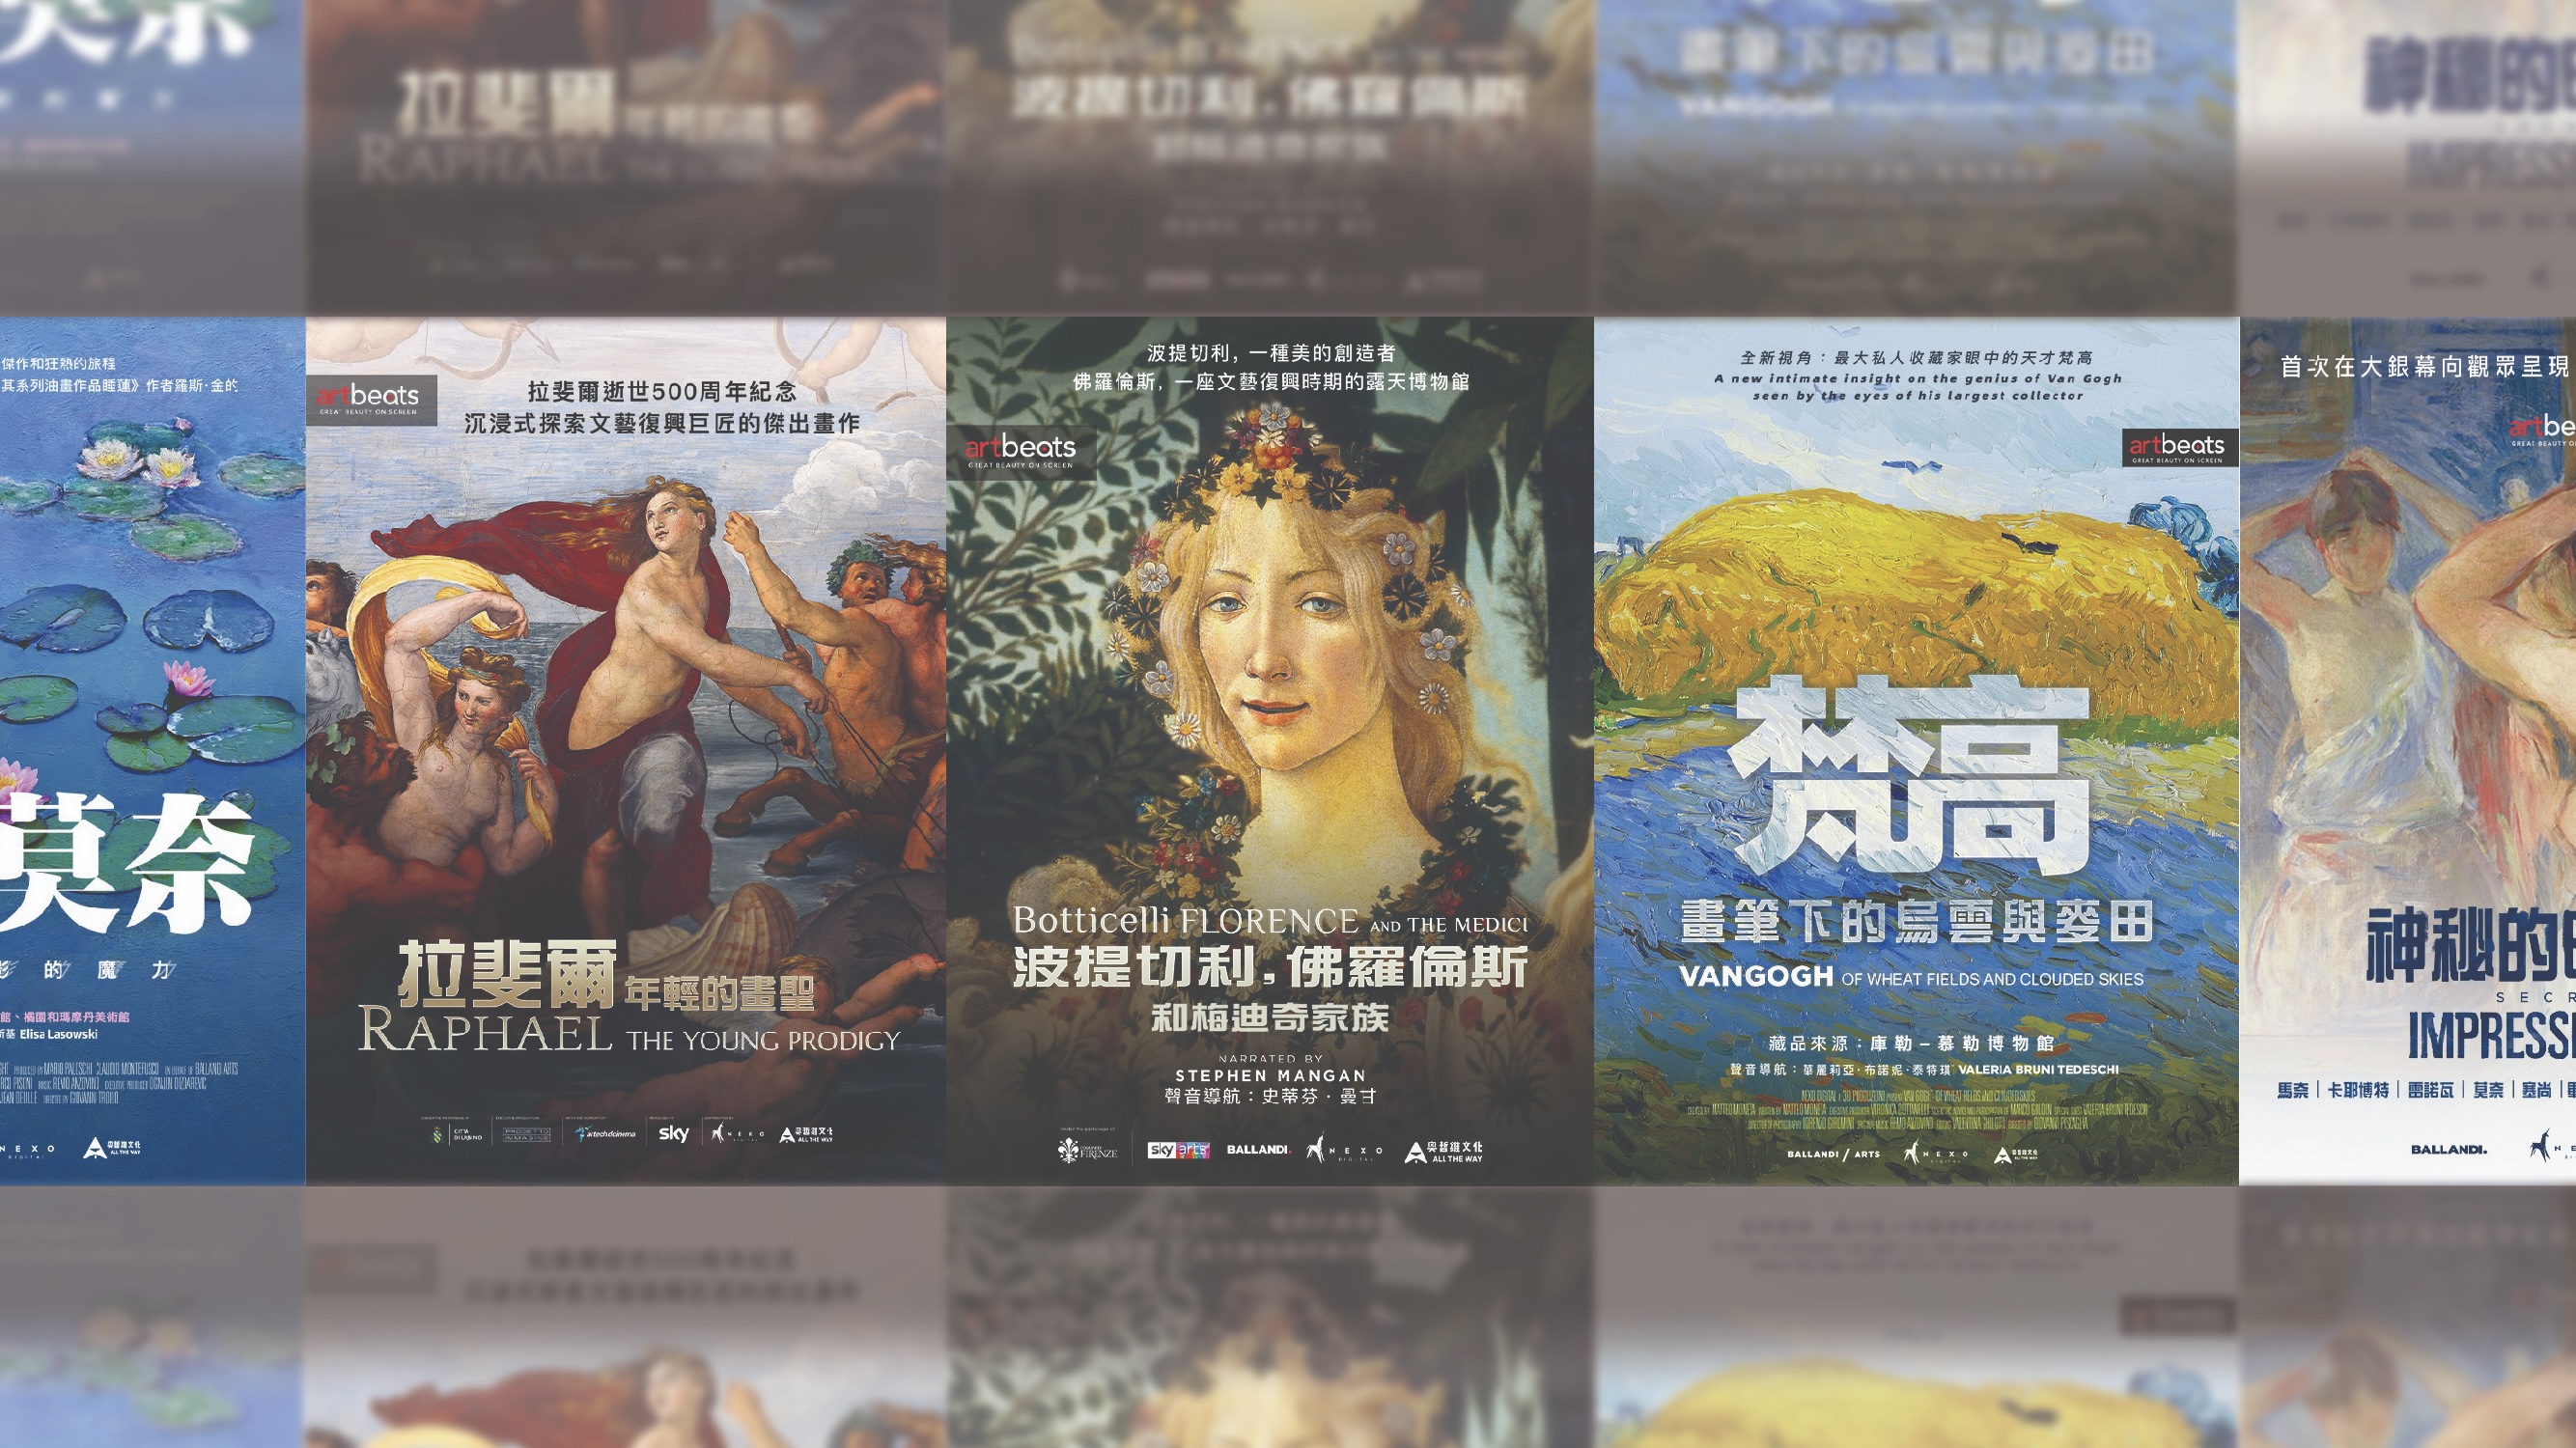 香港故宮「情迷傑作」紀錄片放映 探索波提切利與梵高等傳奇藝術家事蹟